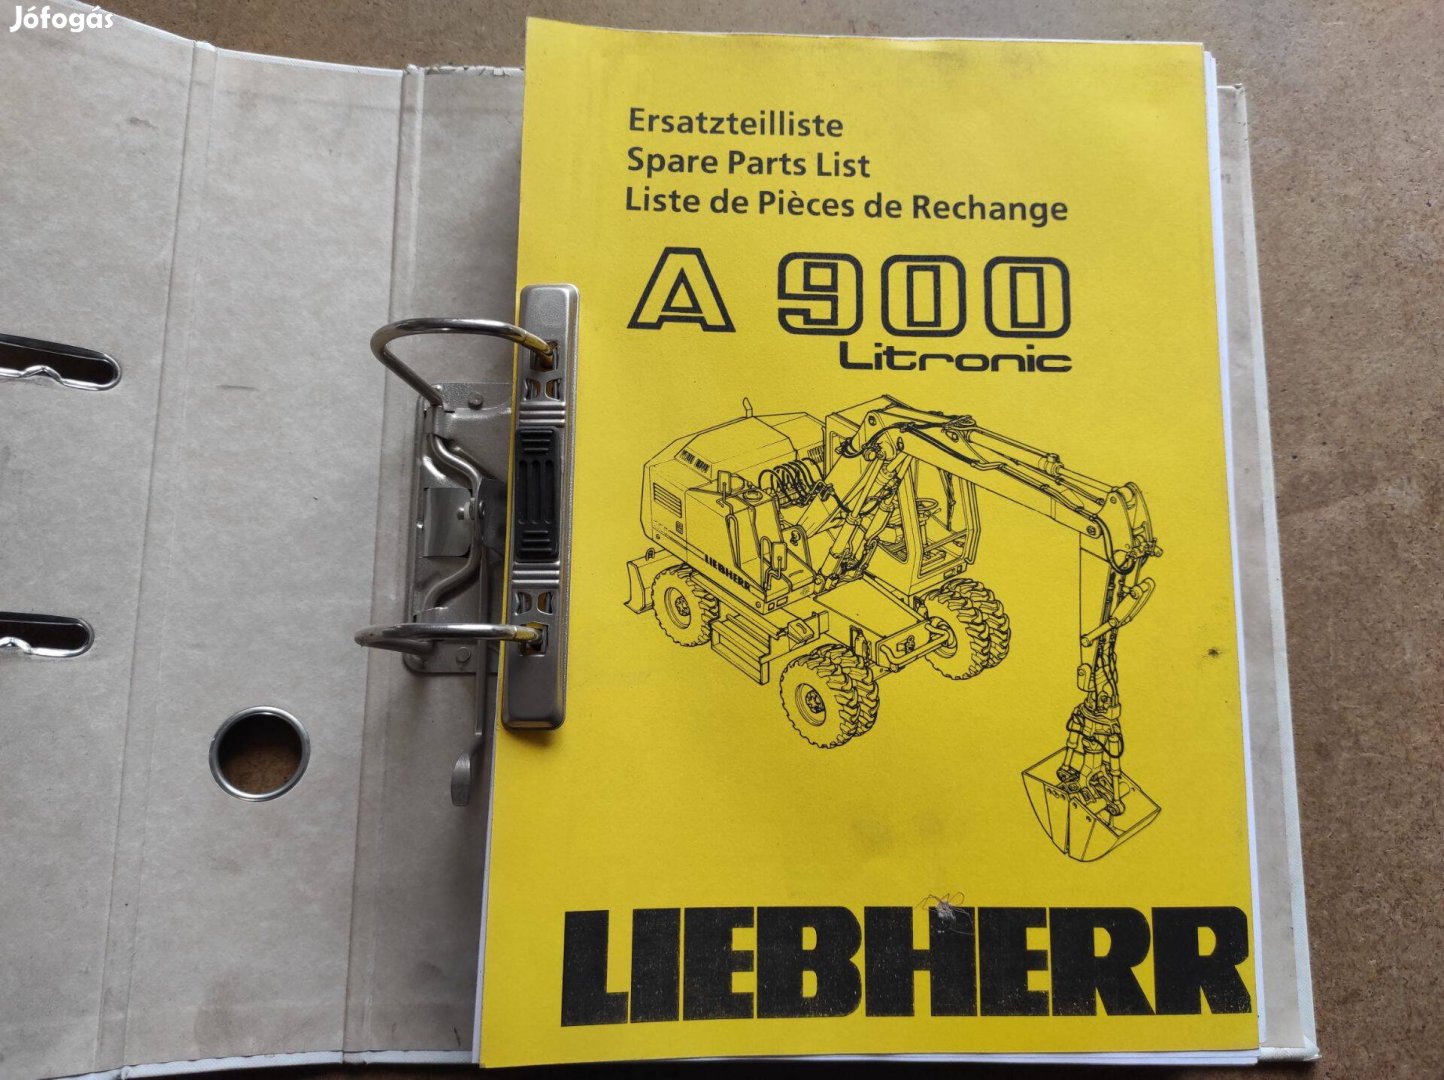 Liebherr A 900 Litronic kotró alkatrészkatalógus